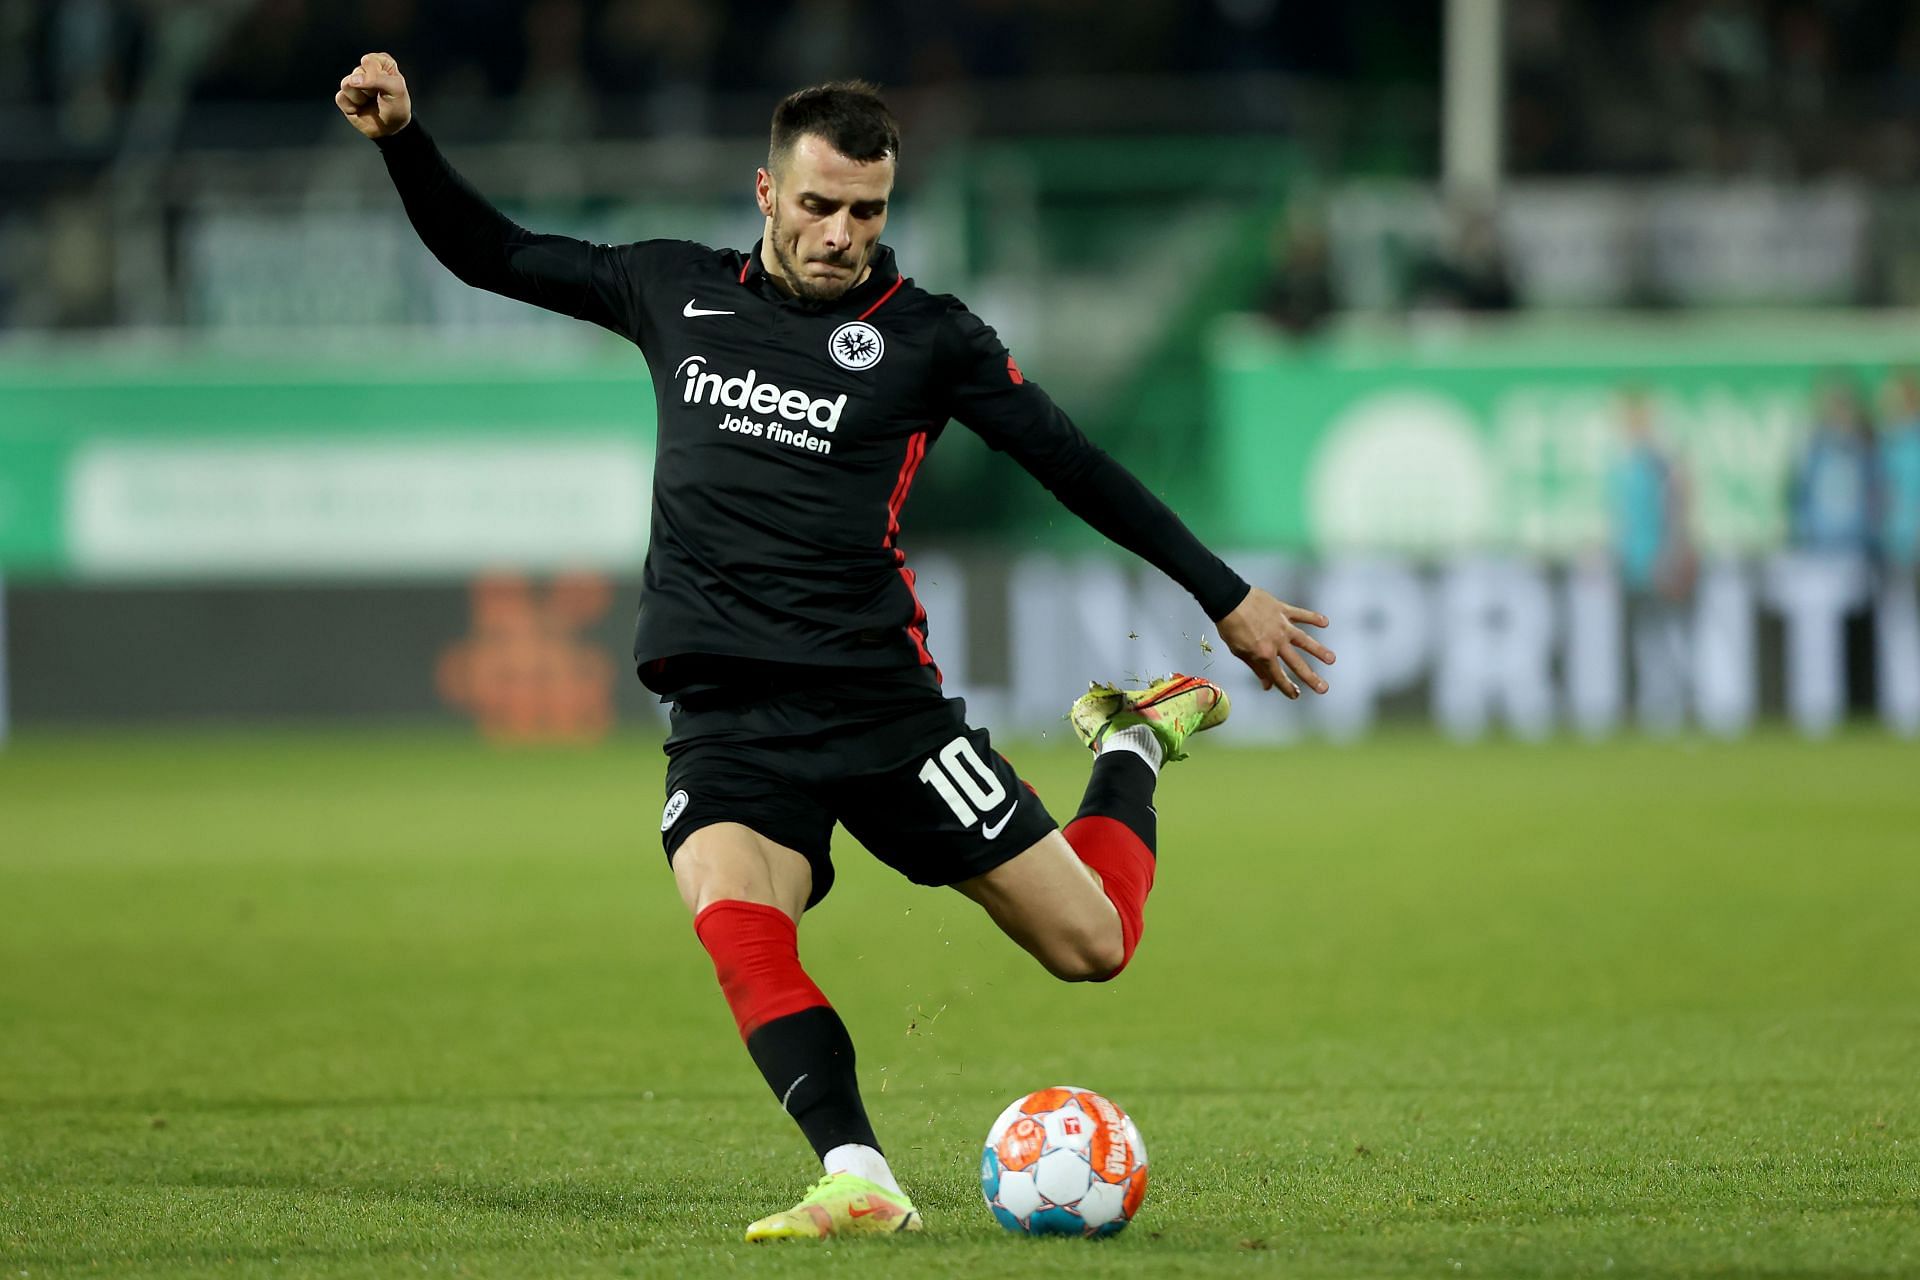 Eintracht Frankfurt will face Freiburg on Sunday - Bundesliga